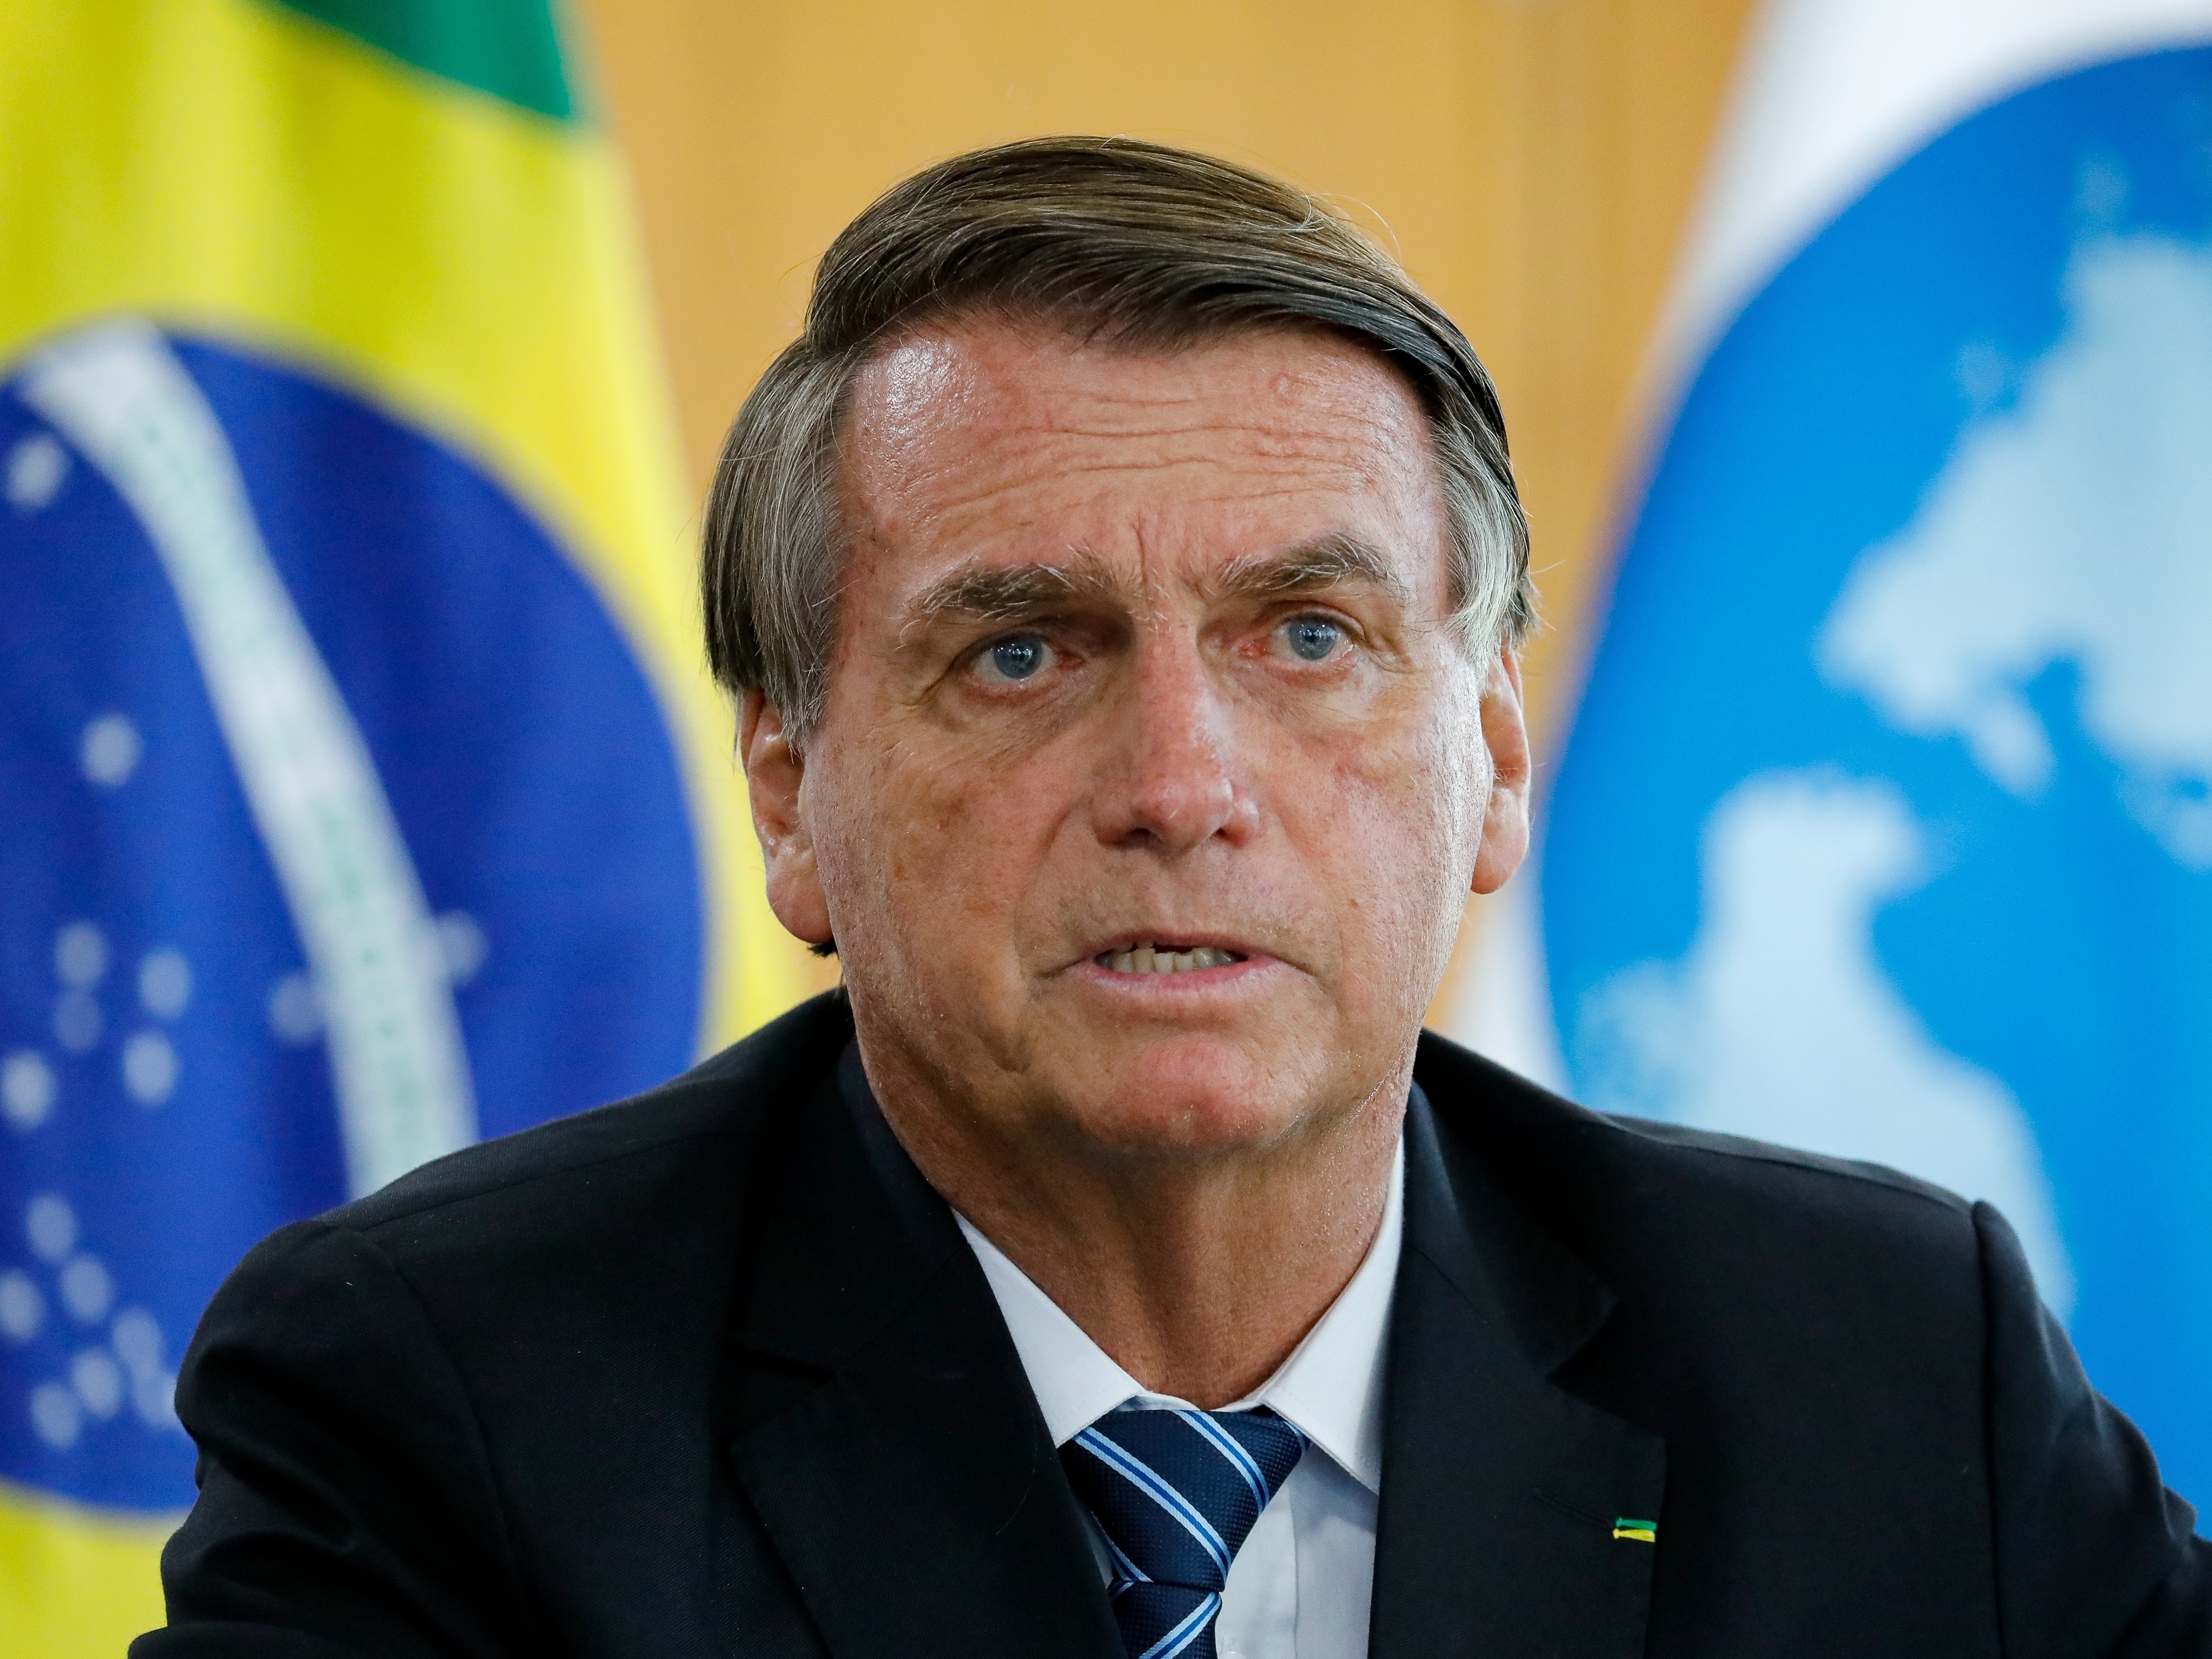 Acuado e sem respaldo de militares para golpismos, Bolsonaro acena à PM